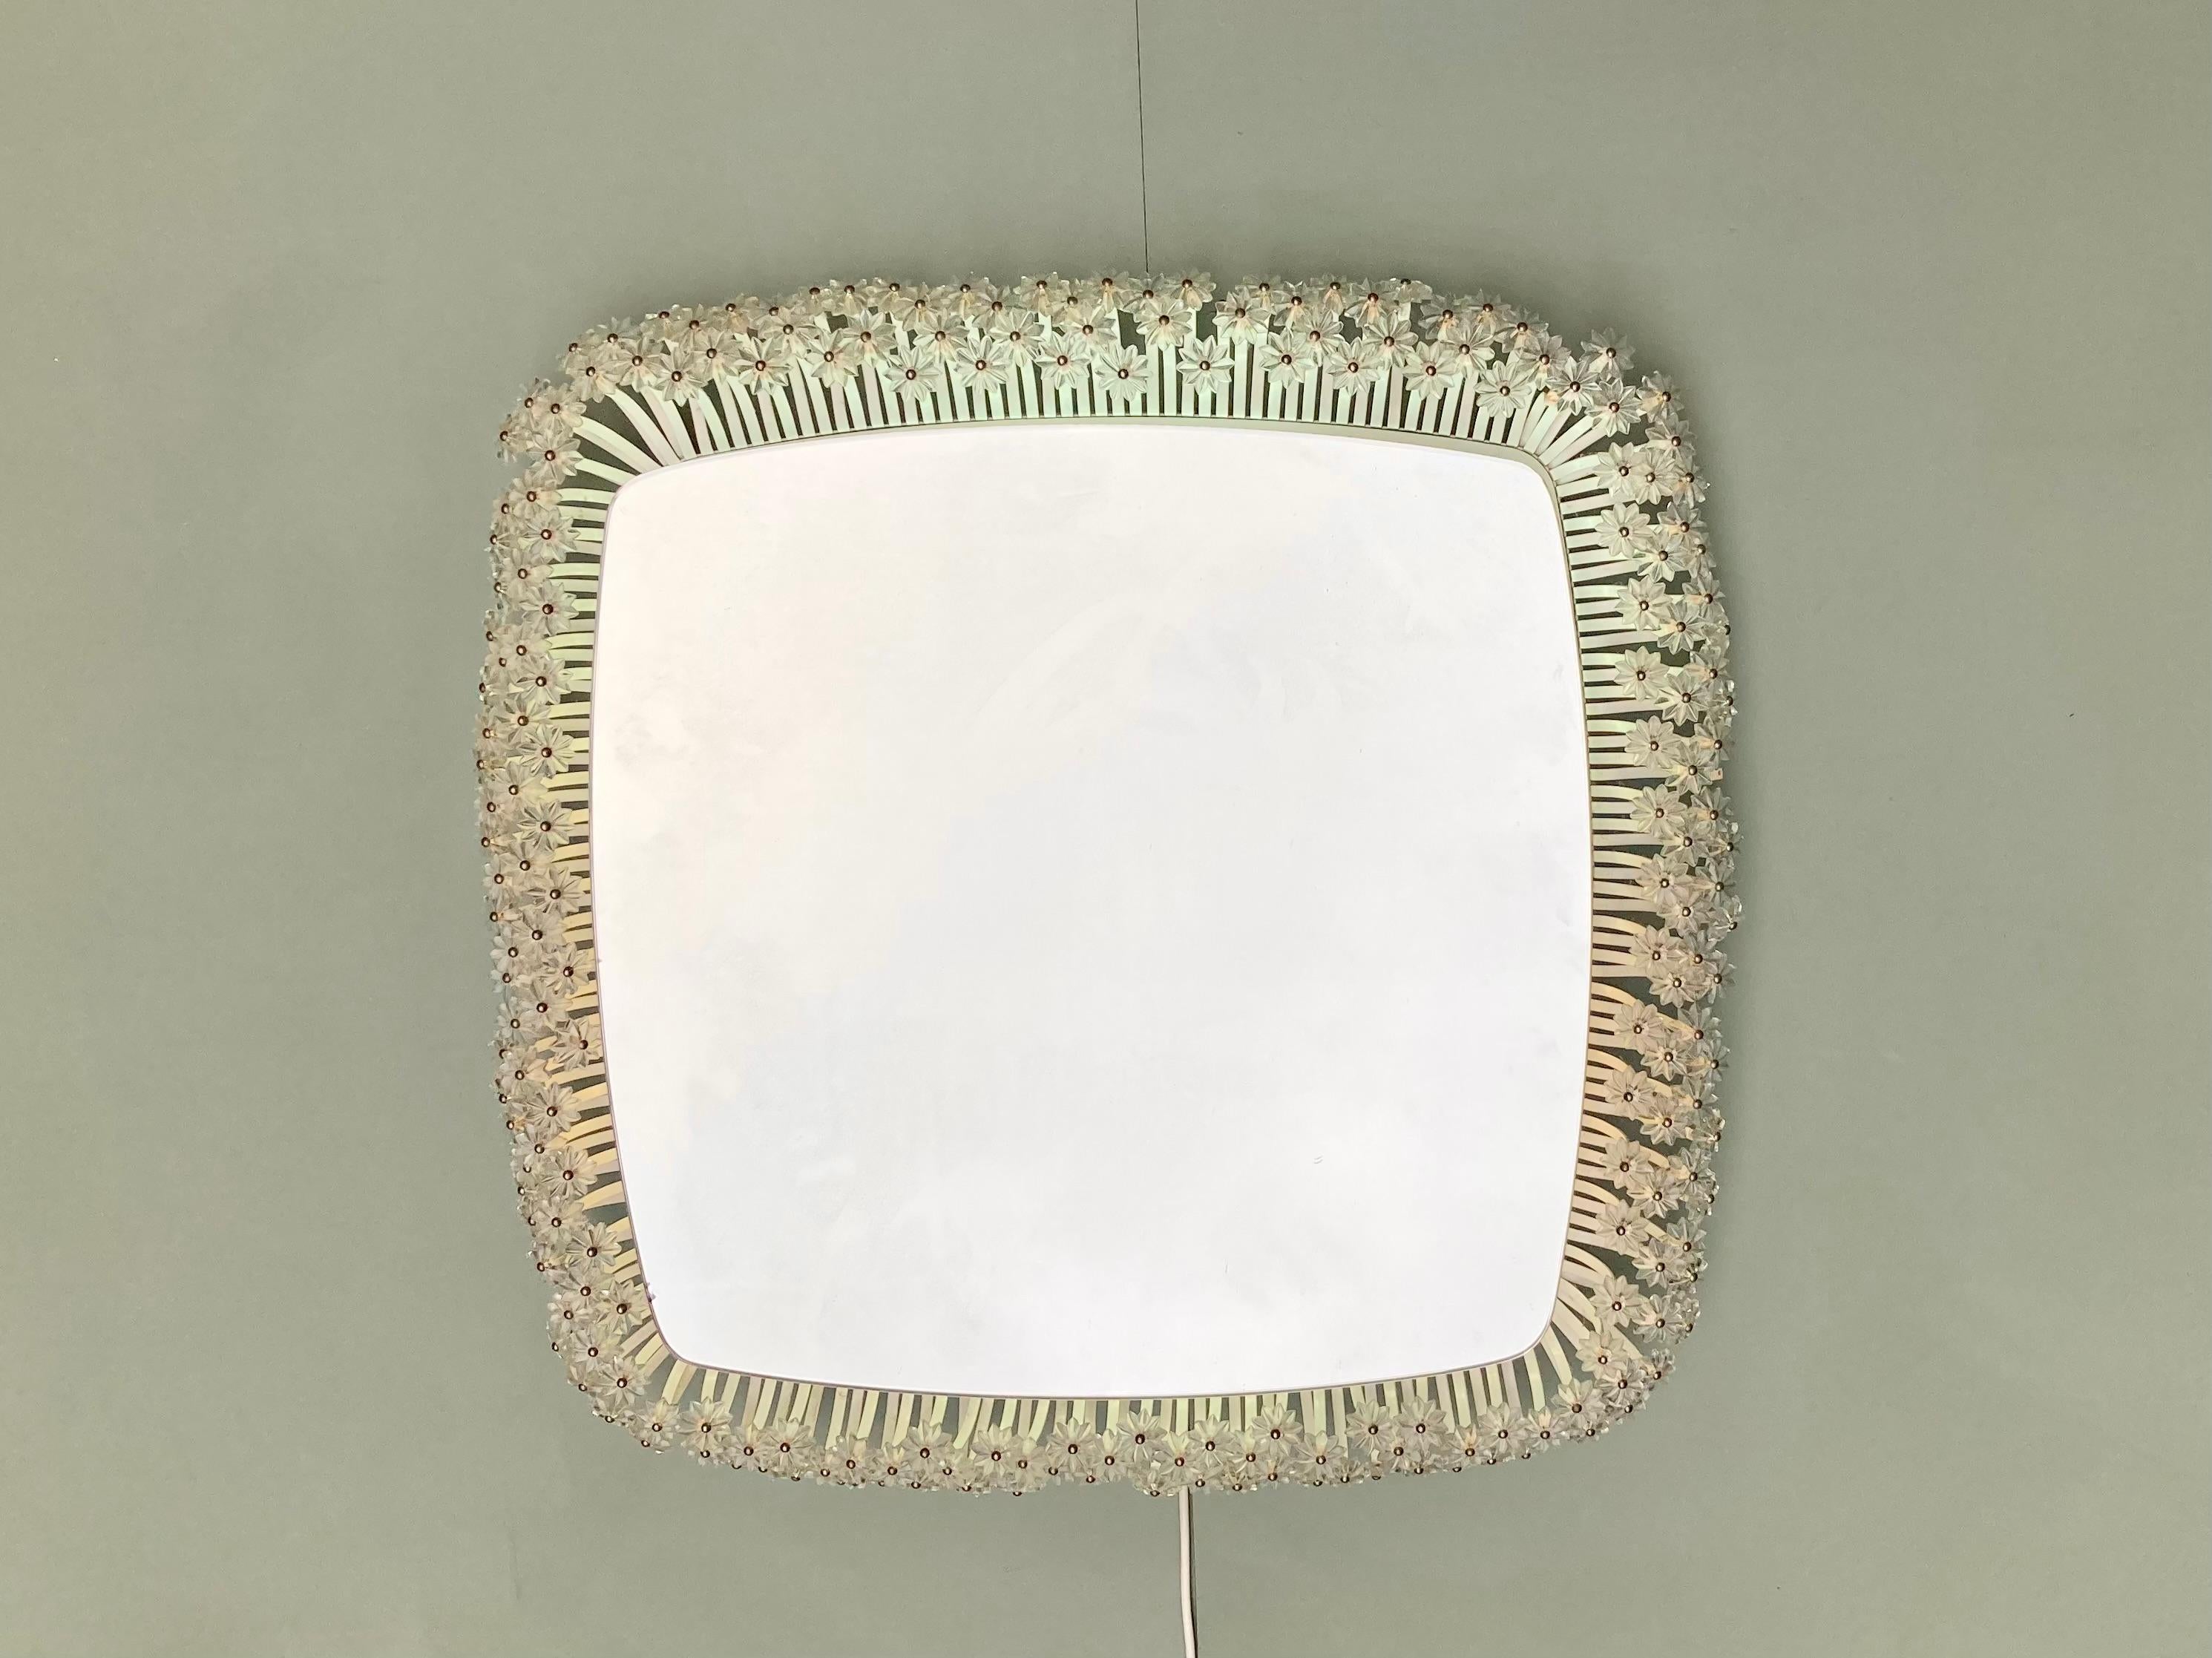 Miroir rétro-éclairé par Emil Stejnar pour Rupert Nikoll.
Le cadre du miroir est en métal laqué blanc terminé par des fleurs en verre.
La lumière est fonctionnelle, le miroir est parfait.